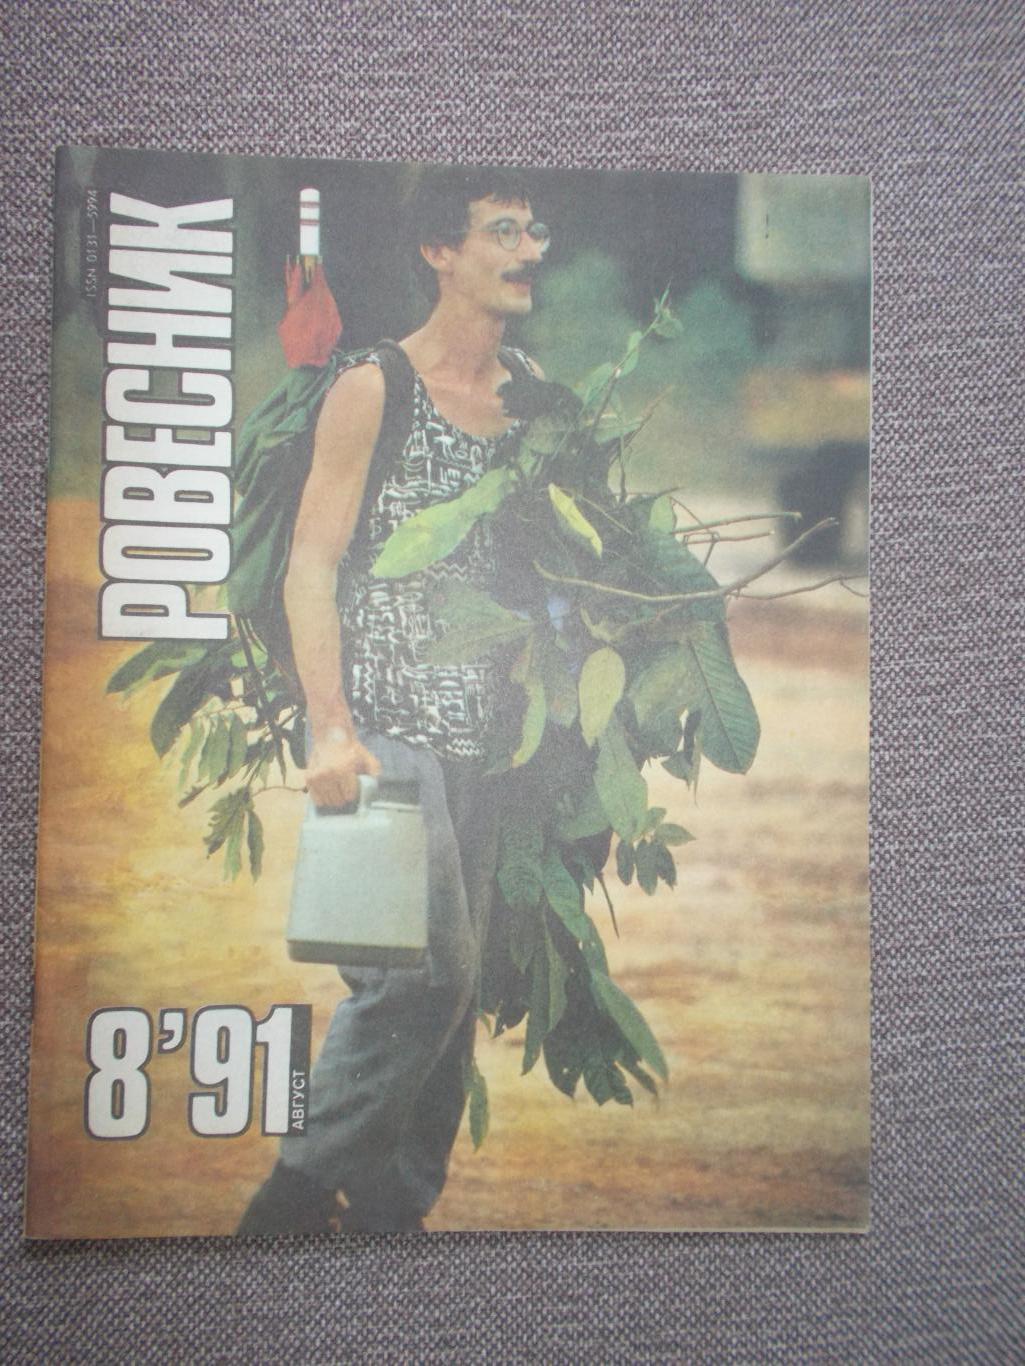 Журнал СССР :Ровесник№ 8 (август) 1991 г. (Молодежный музыкальный журнал)